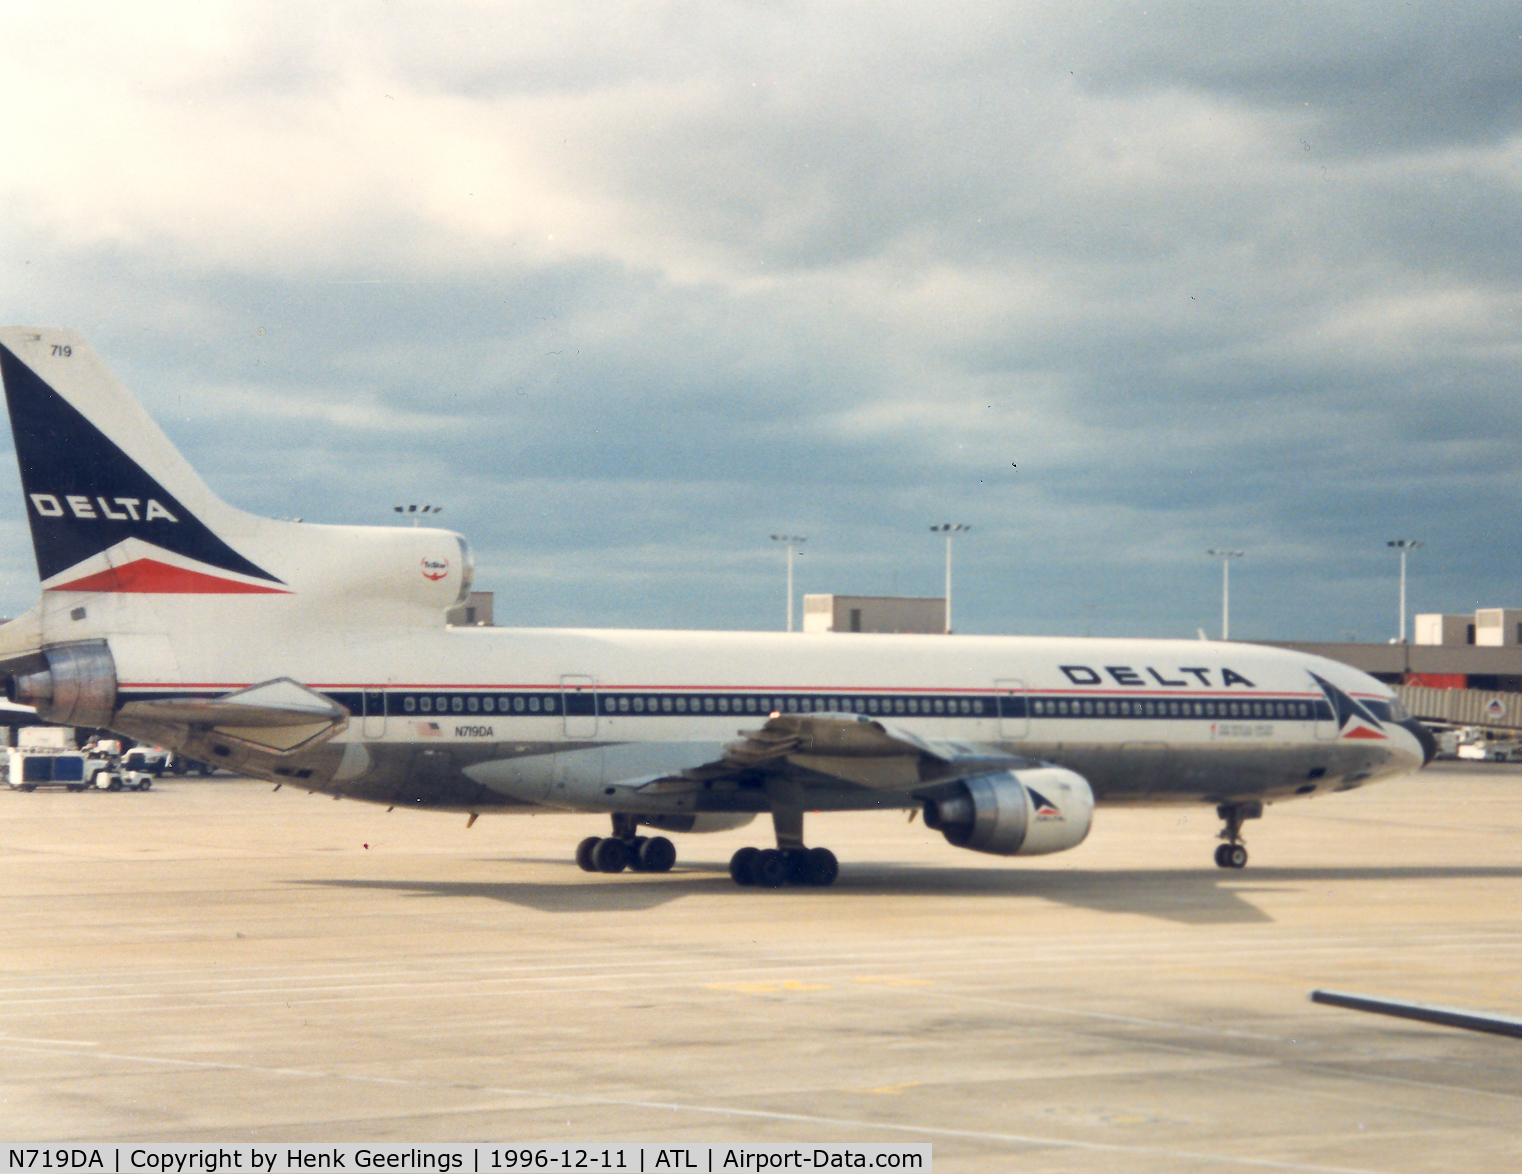 N719DA, 1976 Lockheed L-1011-385-1 TriStar 1 C/N 193C-1135, Delta